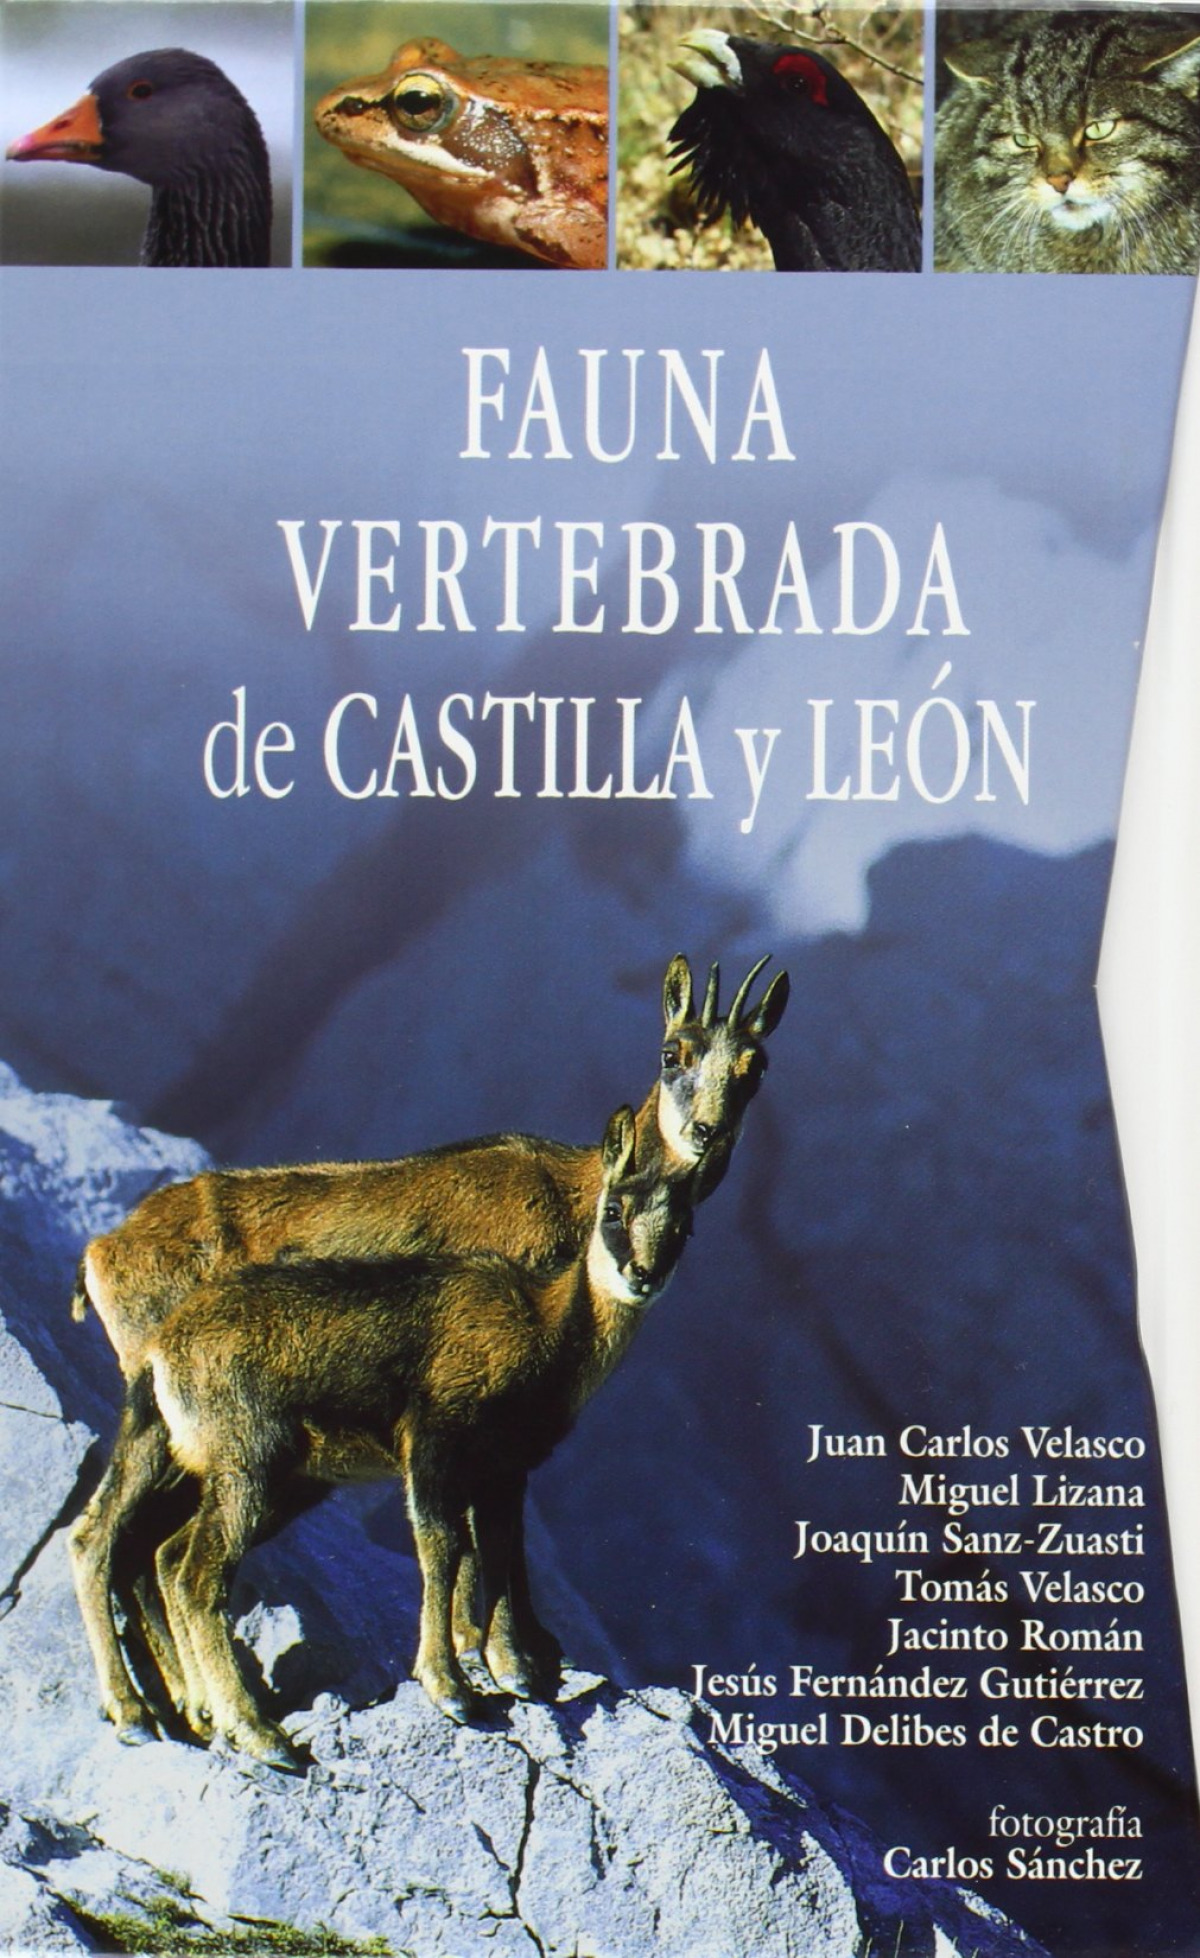 Fauna vertebrada de Castilla y León - Velasco Marcos, Juan Carlos